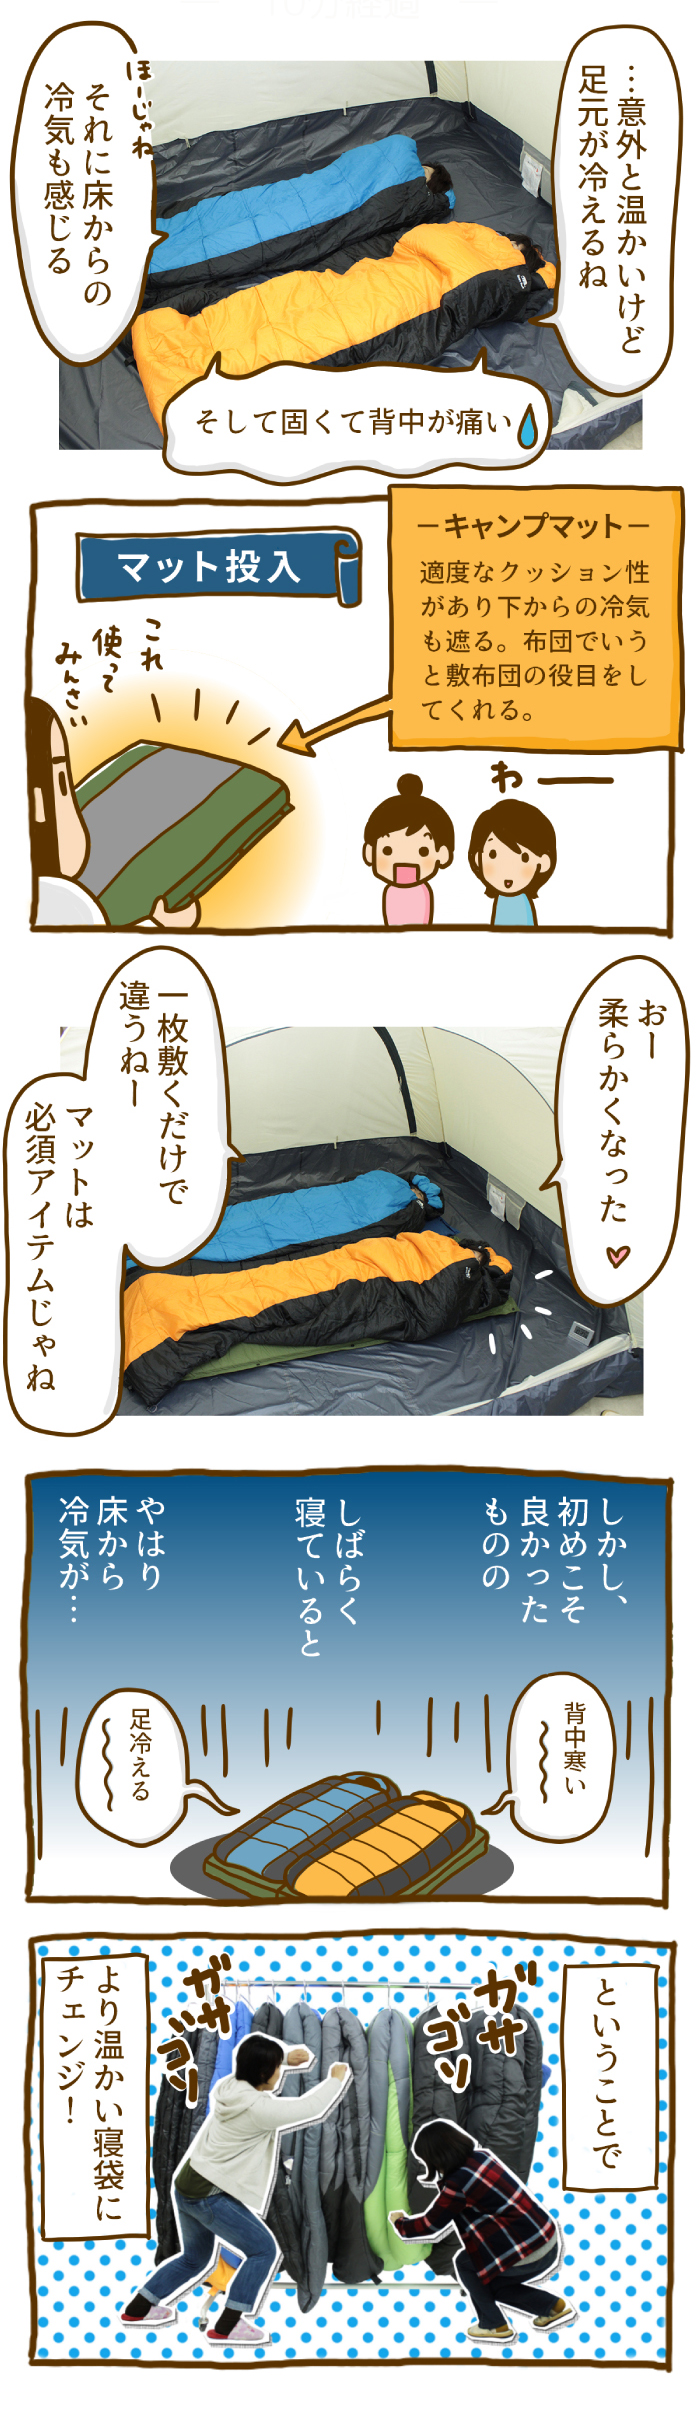 冬用寝袋の比較と選び方 寒い部屋で寝てみた ゴリラキャンプ部